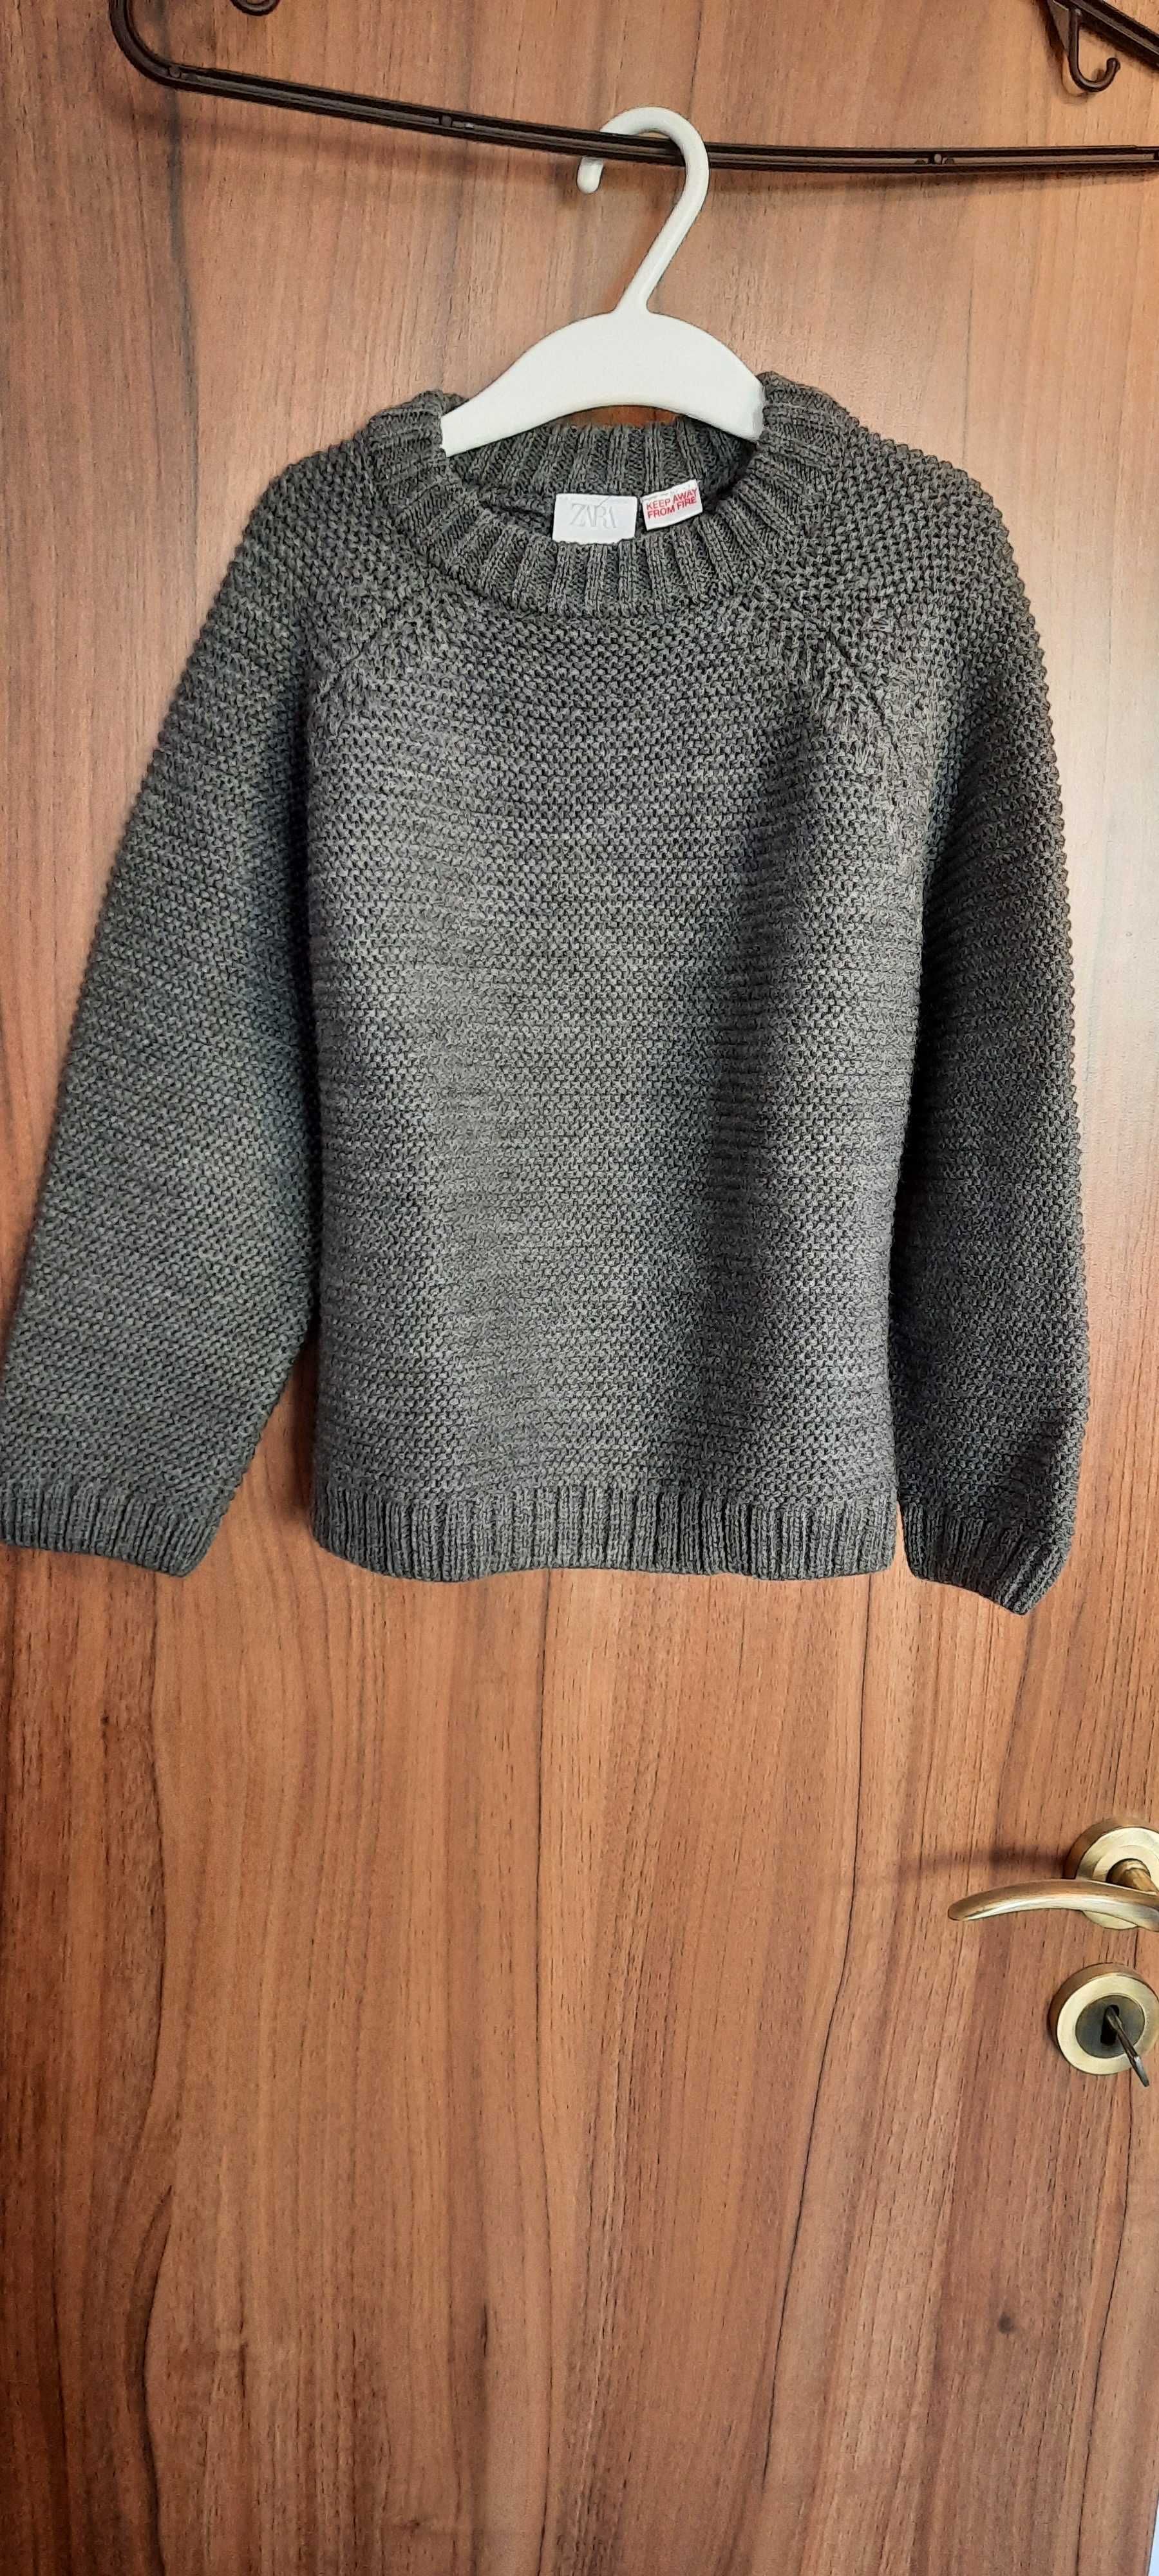 Нов пуловер за момче нa Zara, размер 4- 5 години 110см